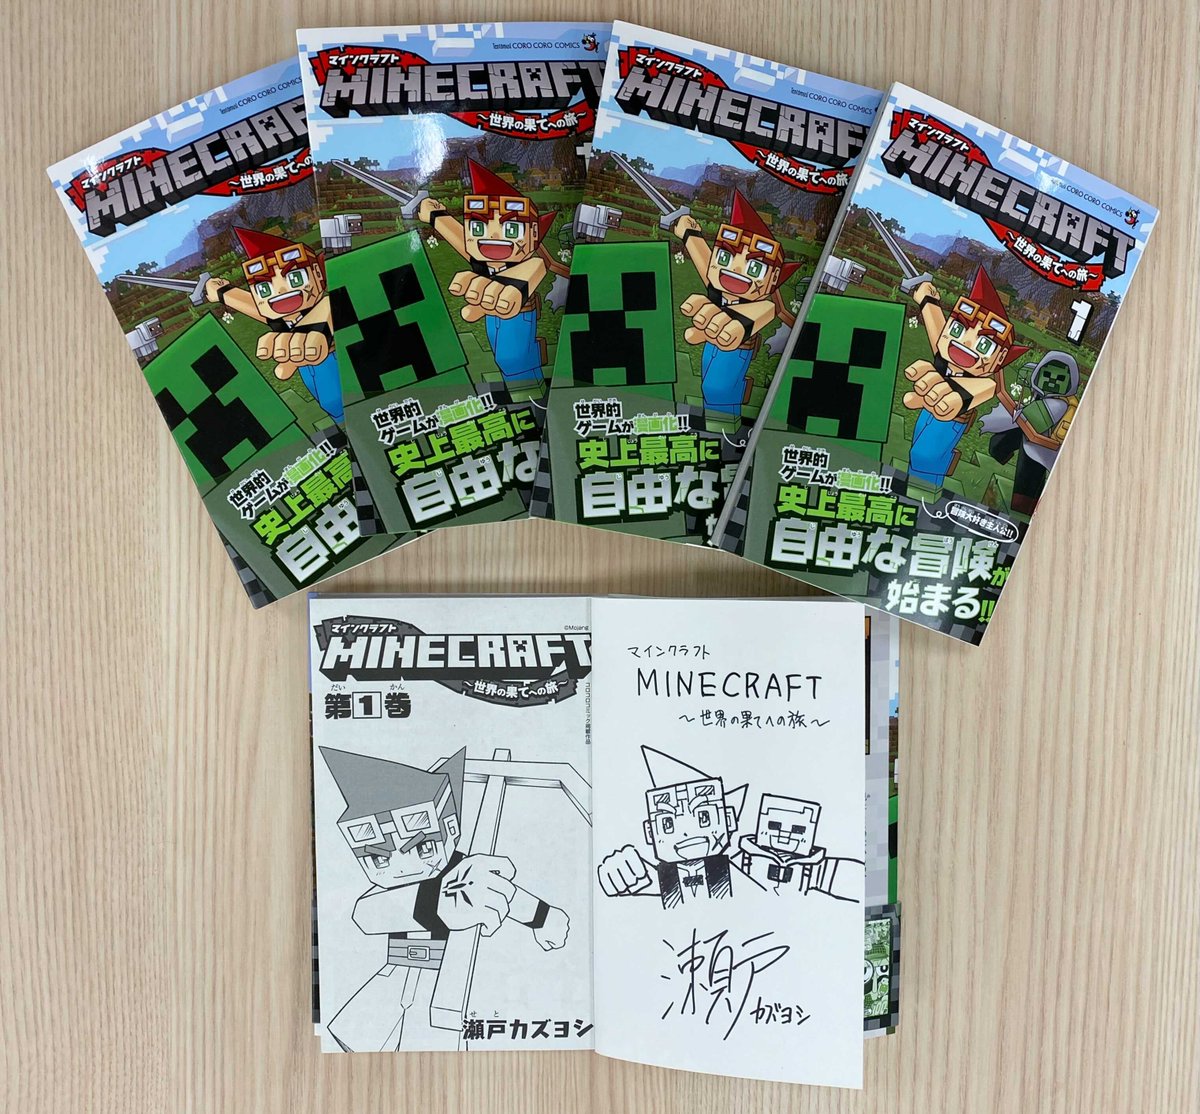 マインクラフト 日本公式 Minecraft Japan 月刊コロコロコミックで連載中の漫画 Minecraft 世界の 果てへの旅 第一巻を抽選で5名様にプレゼント しかも瀬戸カズヨシ先生のサイン入りです 主人公ニコの冒険を単行本でもお楽しみください マイクラ